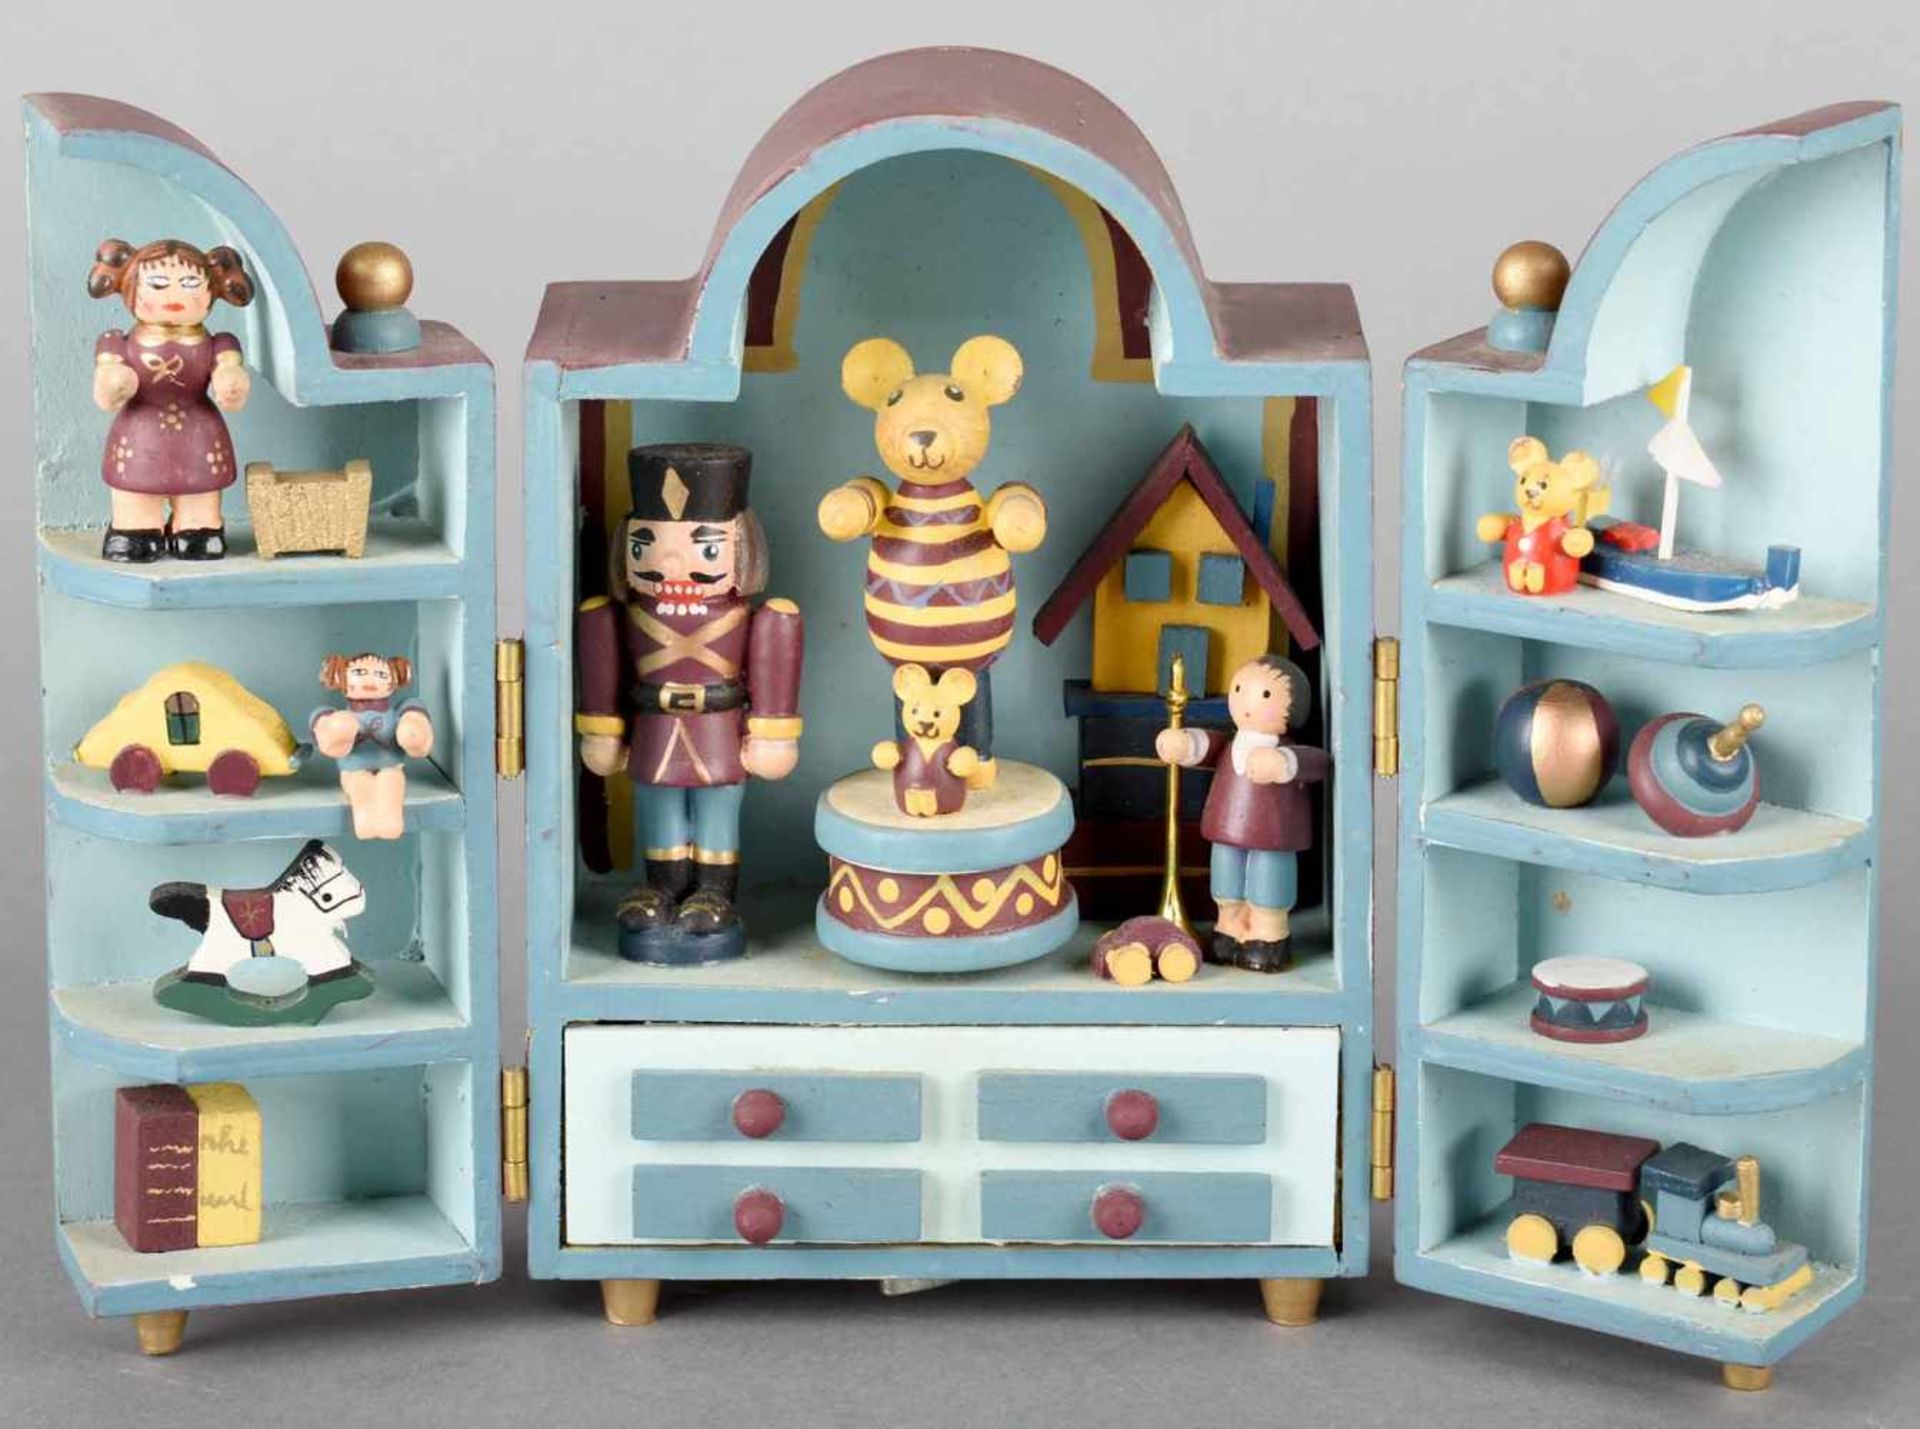 Spieldose Holz farbig bemalt, gestaltet in Form eines aufklappbaren Schrankes mit Spielzeug - Bild 2 aus 4